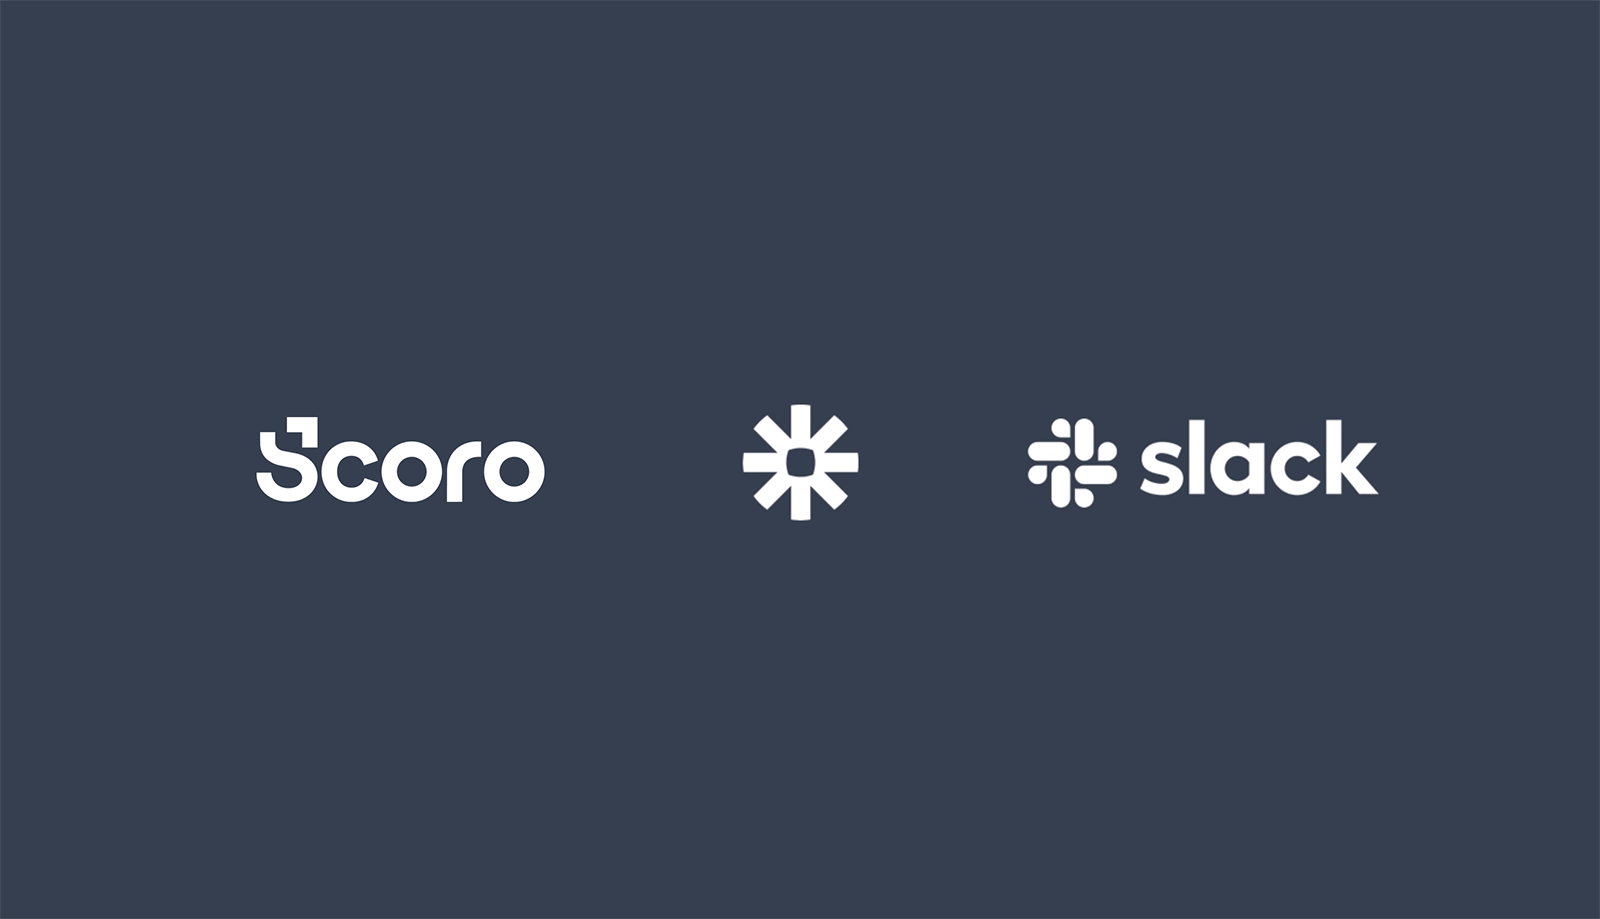 Scoro-Zapier-Slack Logos